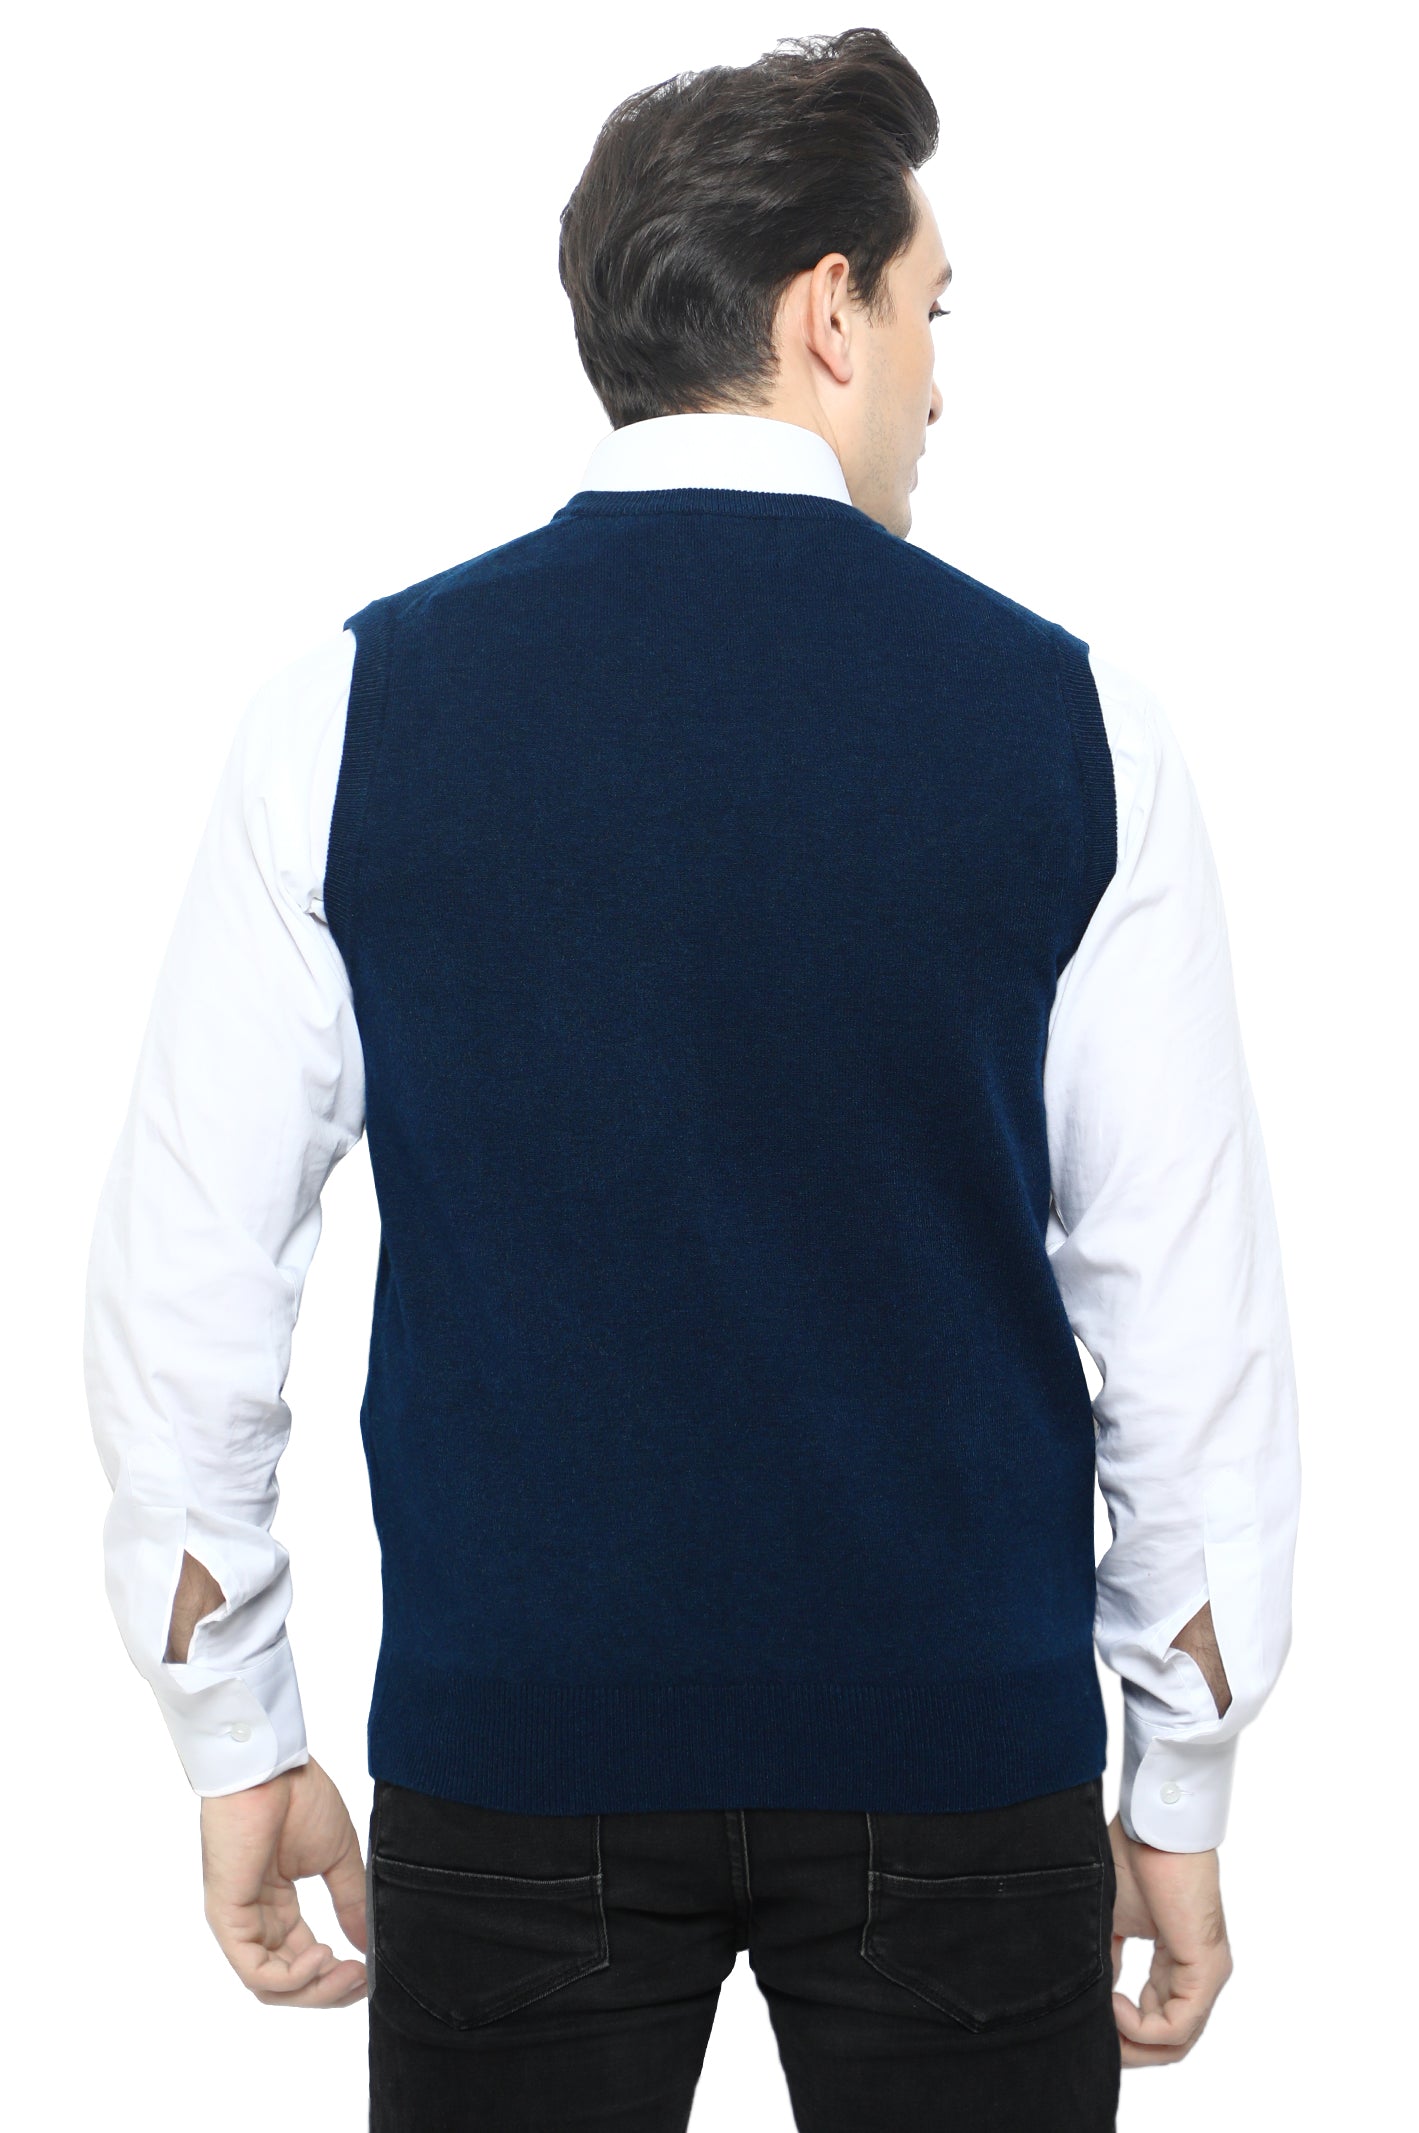 Gents Sweater In N-Blue SKU: SA560-N-BLUE - Diners